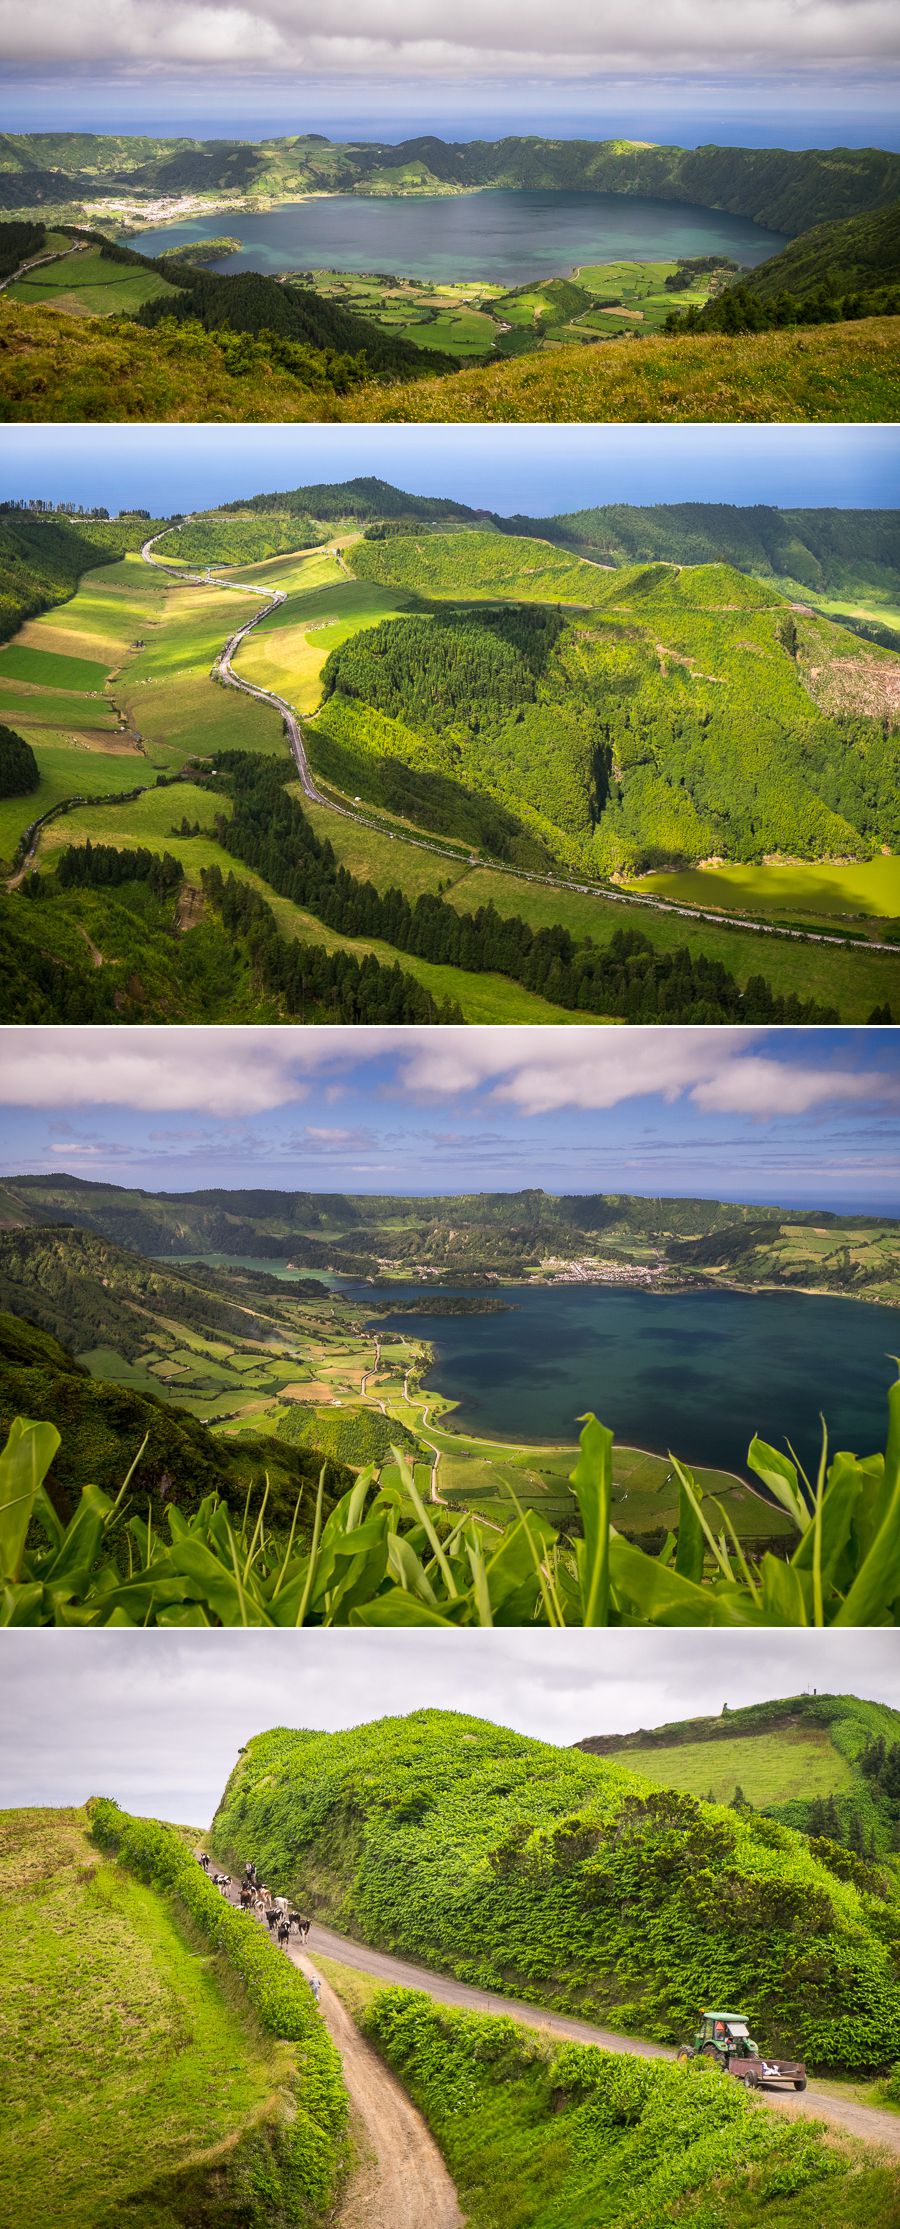 Mata do Canário - Sete Cidades hike - São Miguel - Azores - Portugal